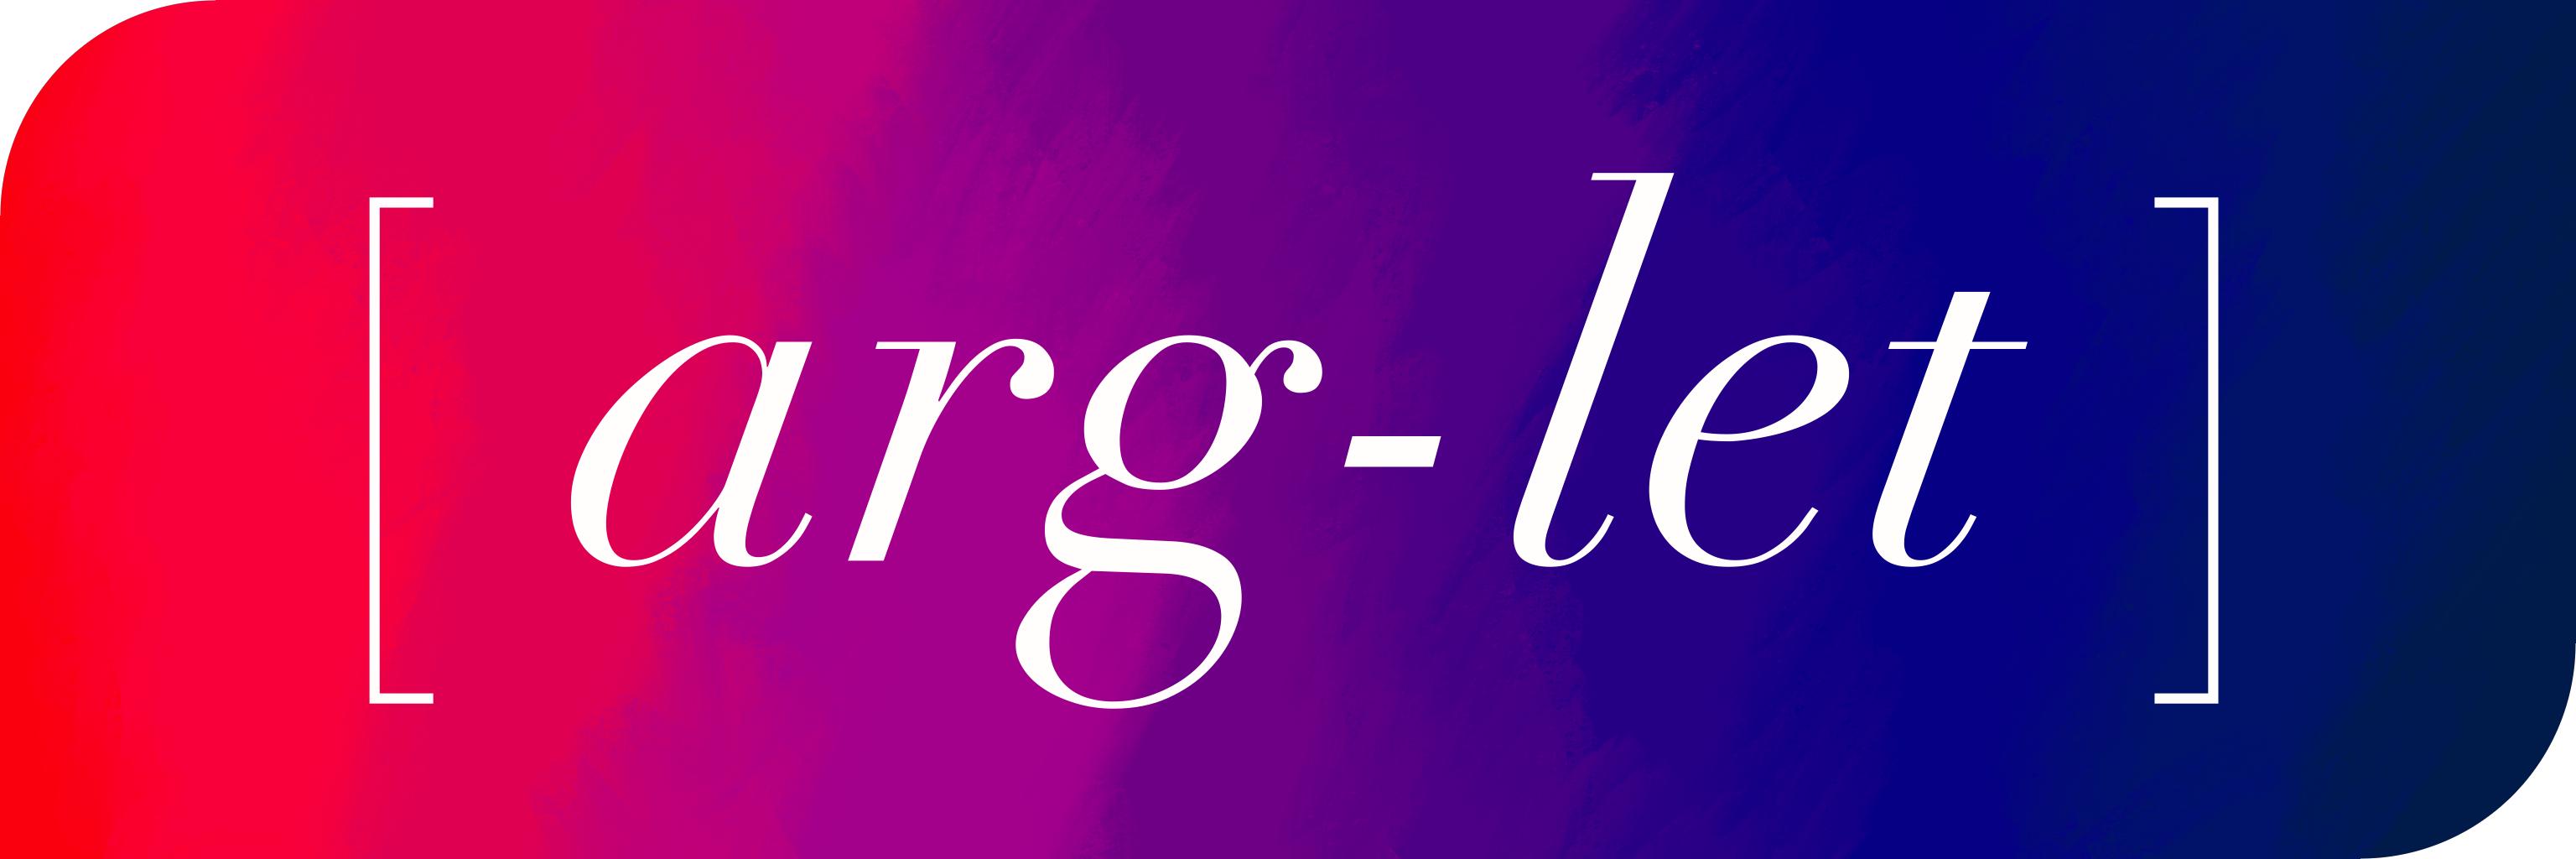 Arg-let logo